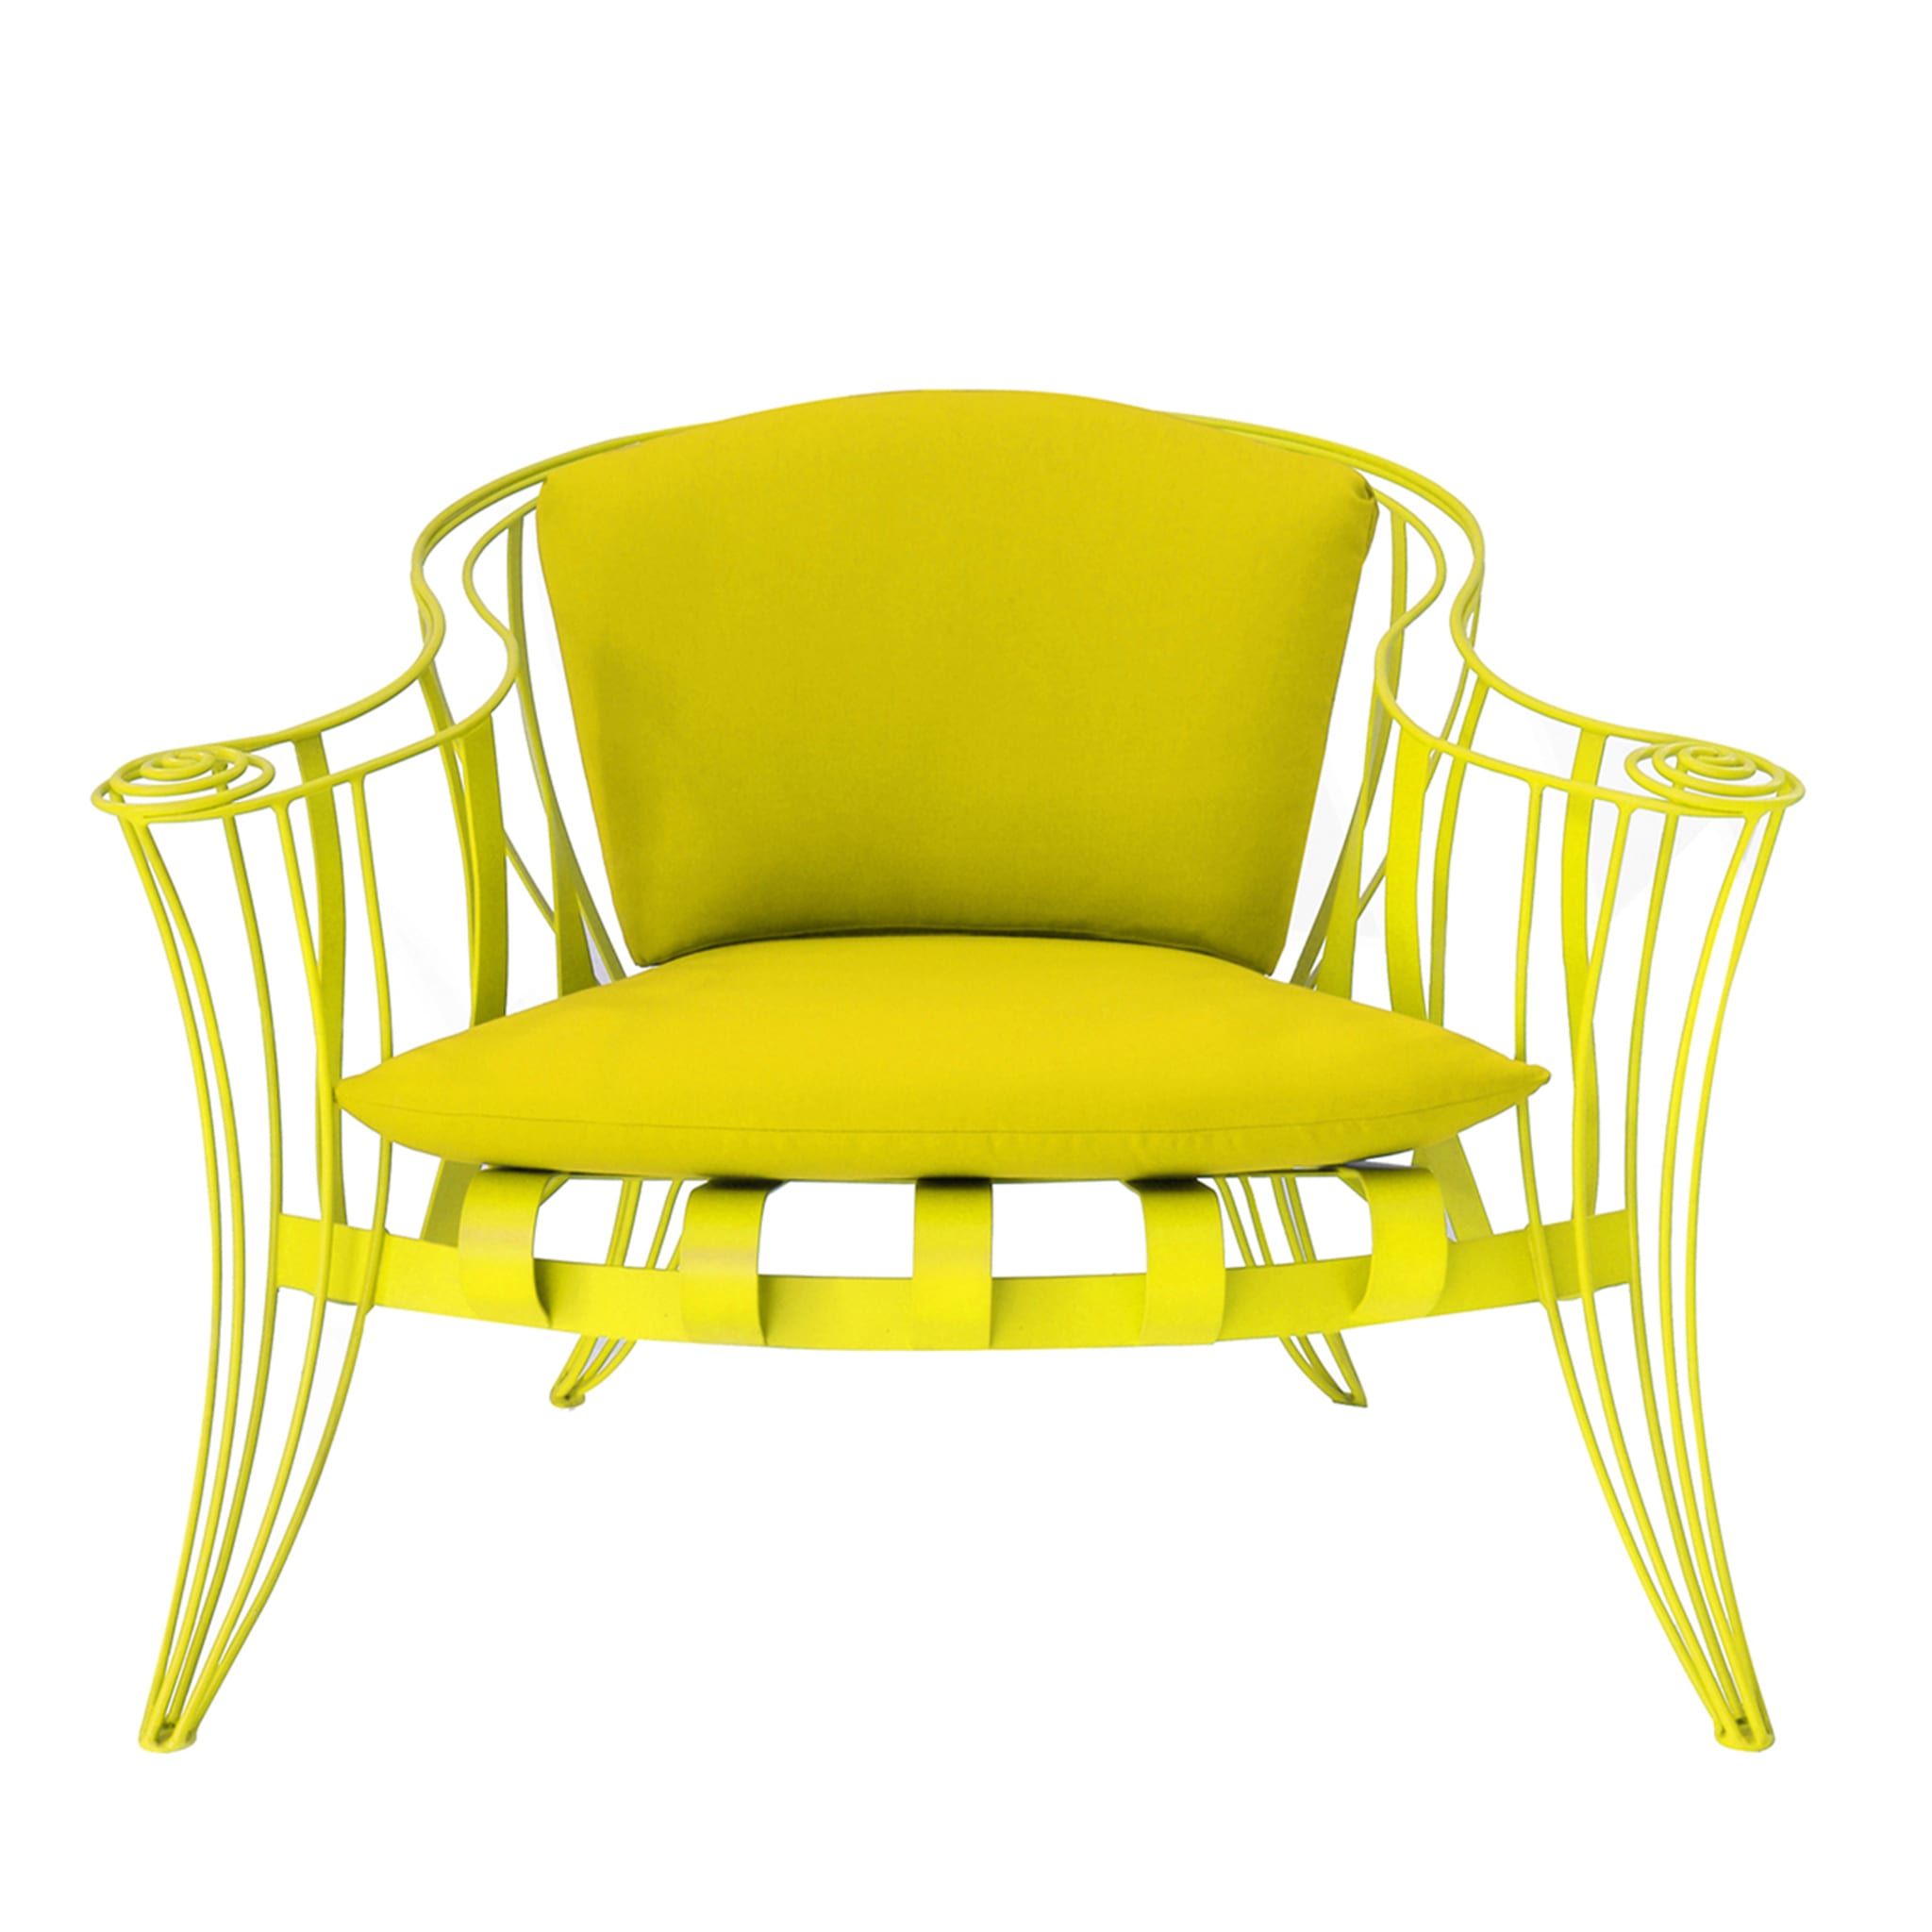 Opus Garden Yellow Armchair by Carlo Rampazzi - Main view